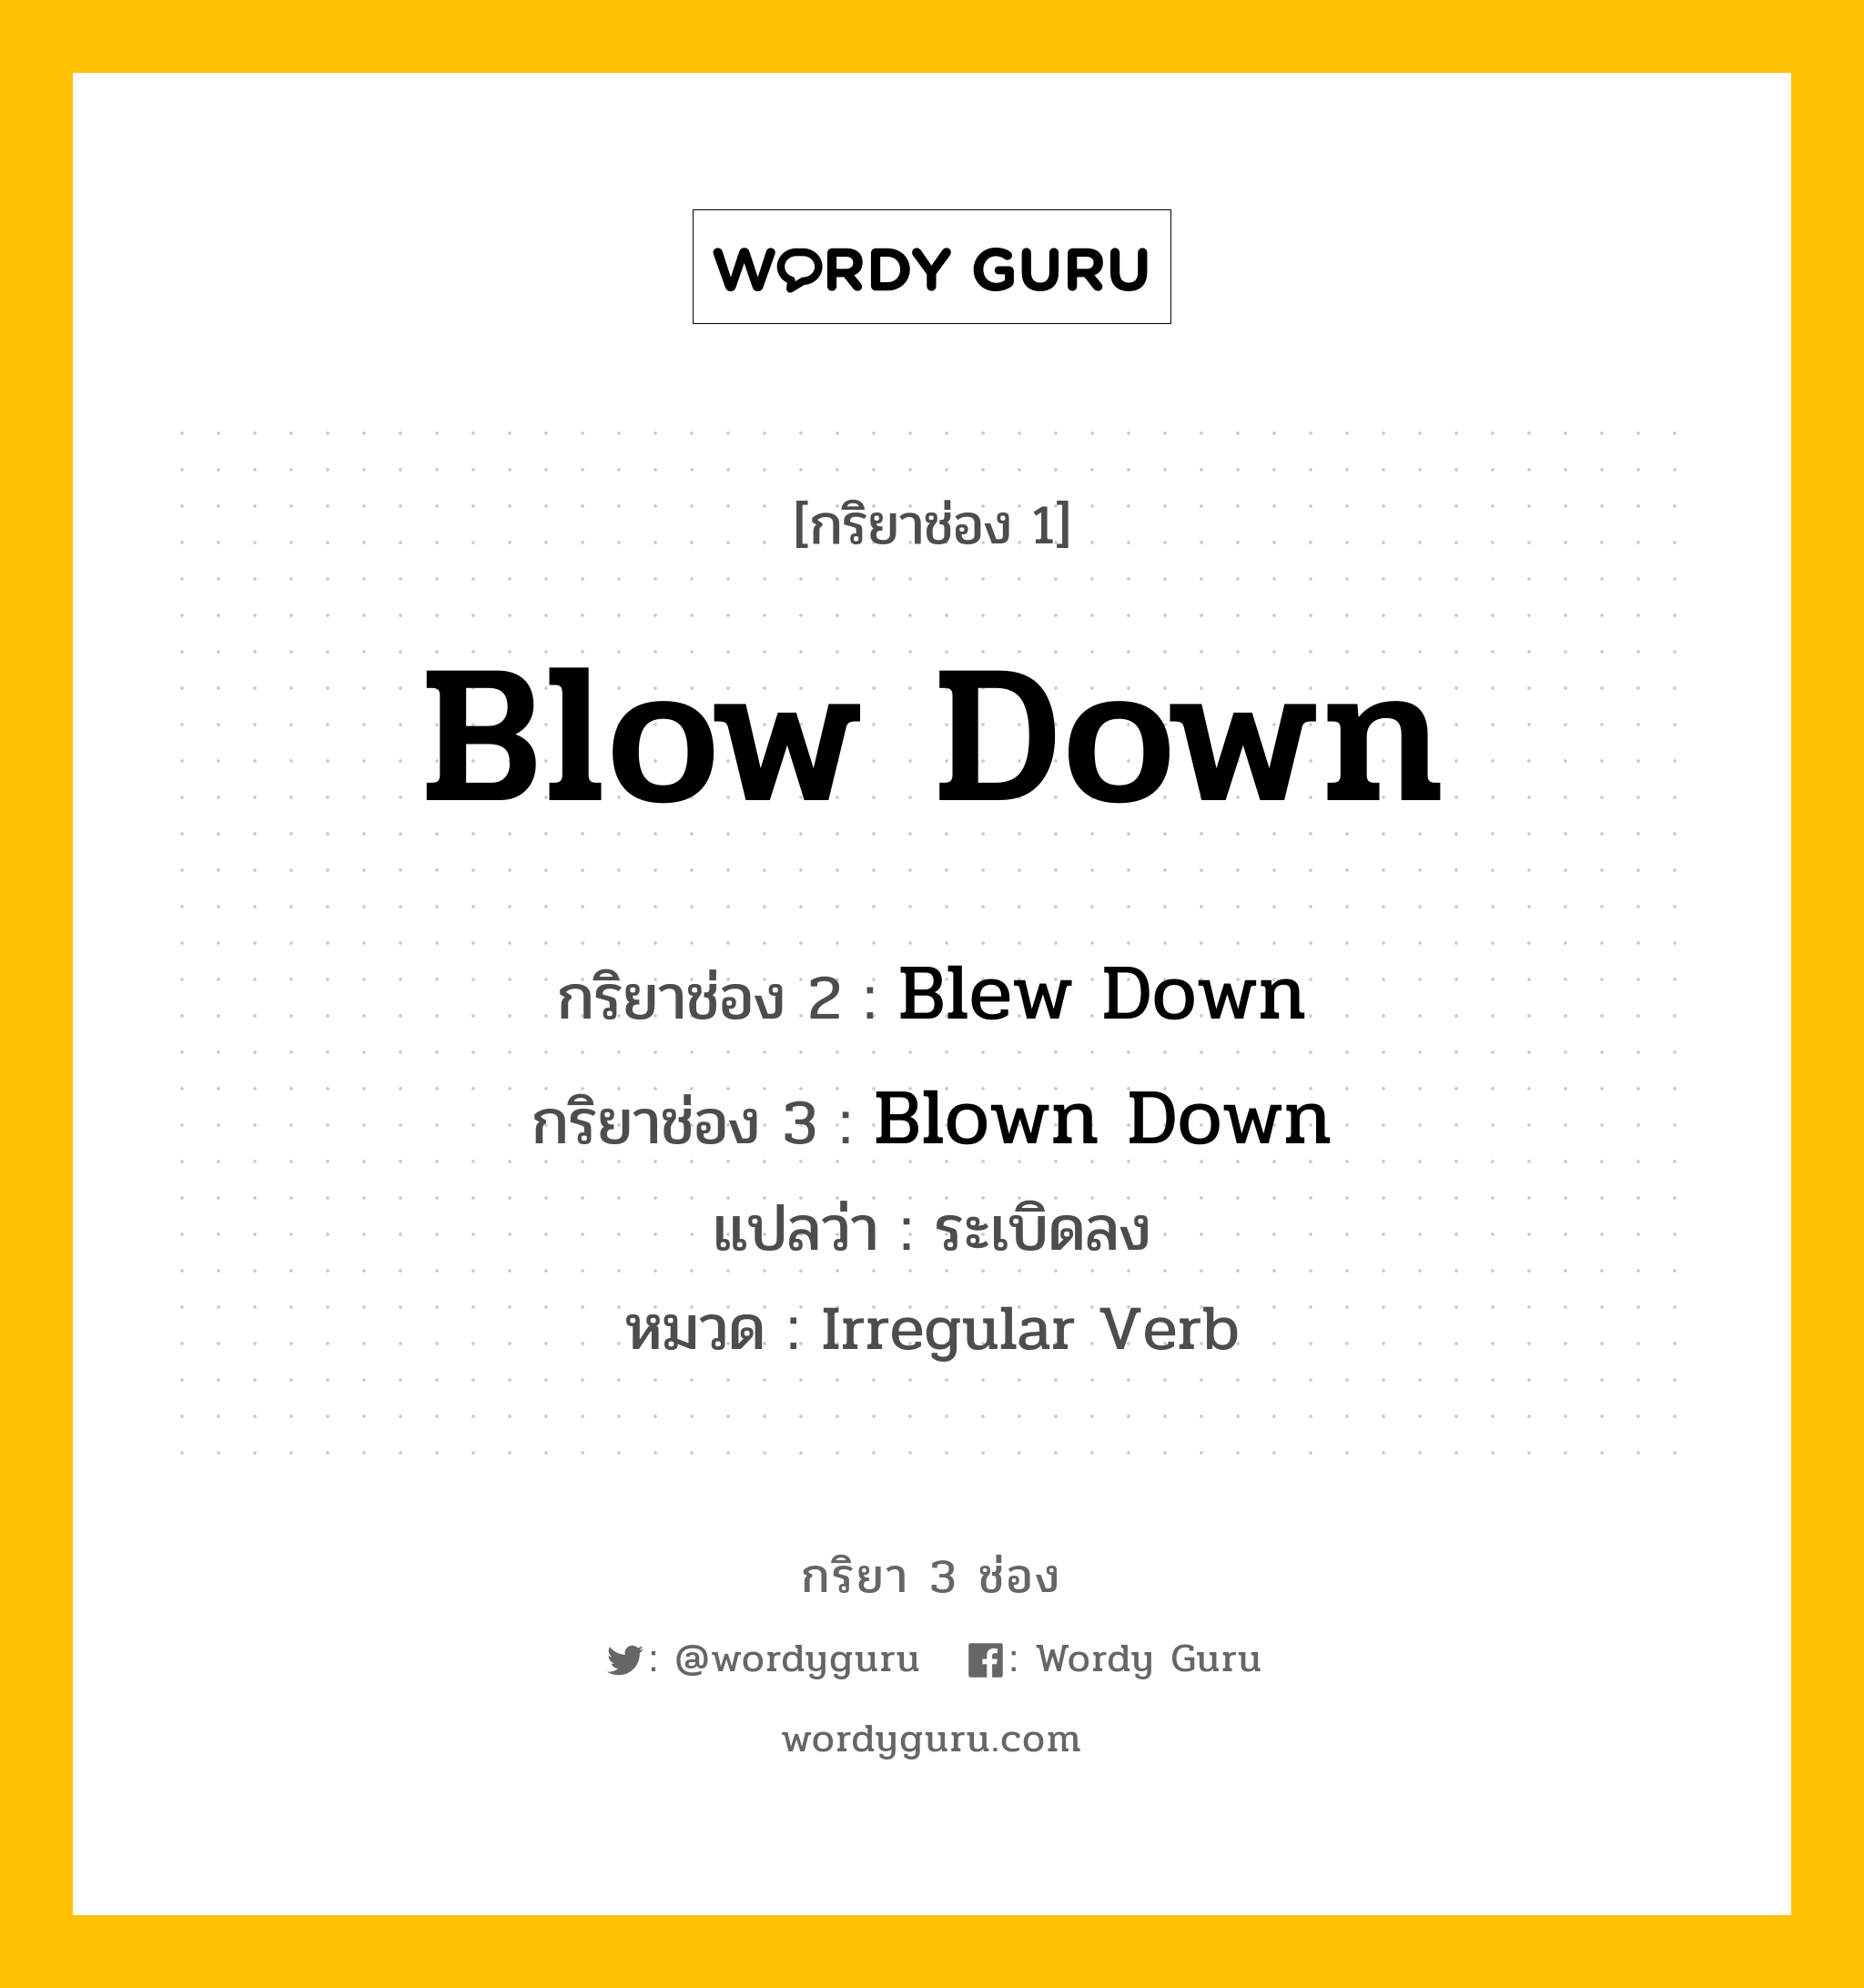 Blow Down มีกริยา 3 ช่องอะไรบ้าง? คำศัพท์ในกลุ่มประเภท Irregular Verb, กริยาช่อง 1 Blow Down กริยาช่อง 2 Blew Down กริยาช่อง 3 Blown Down แปลว่า ระเบิดลง หมวด Irregular Verb หมวด Irregular Verb